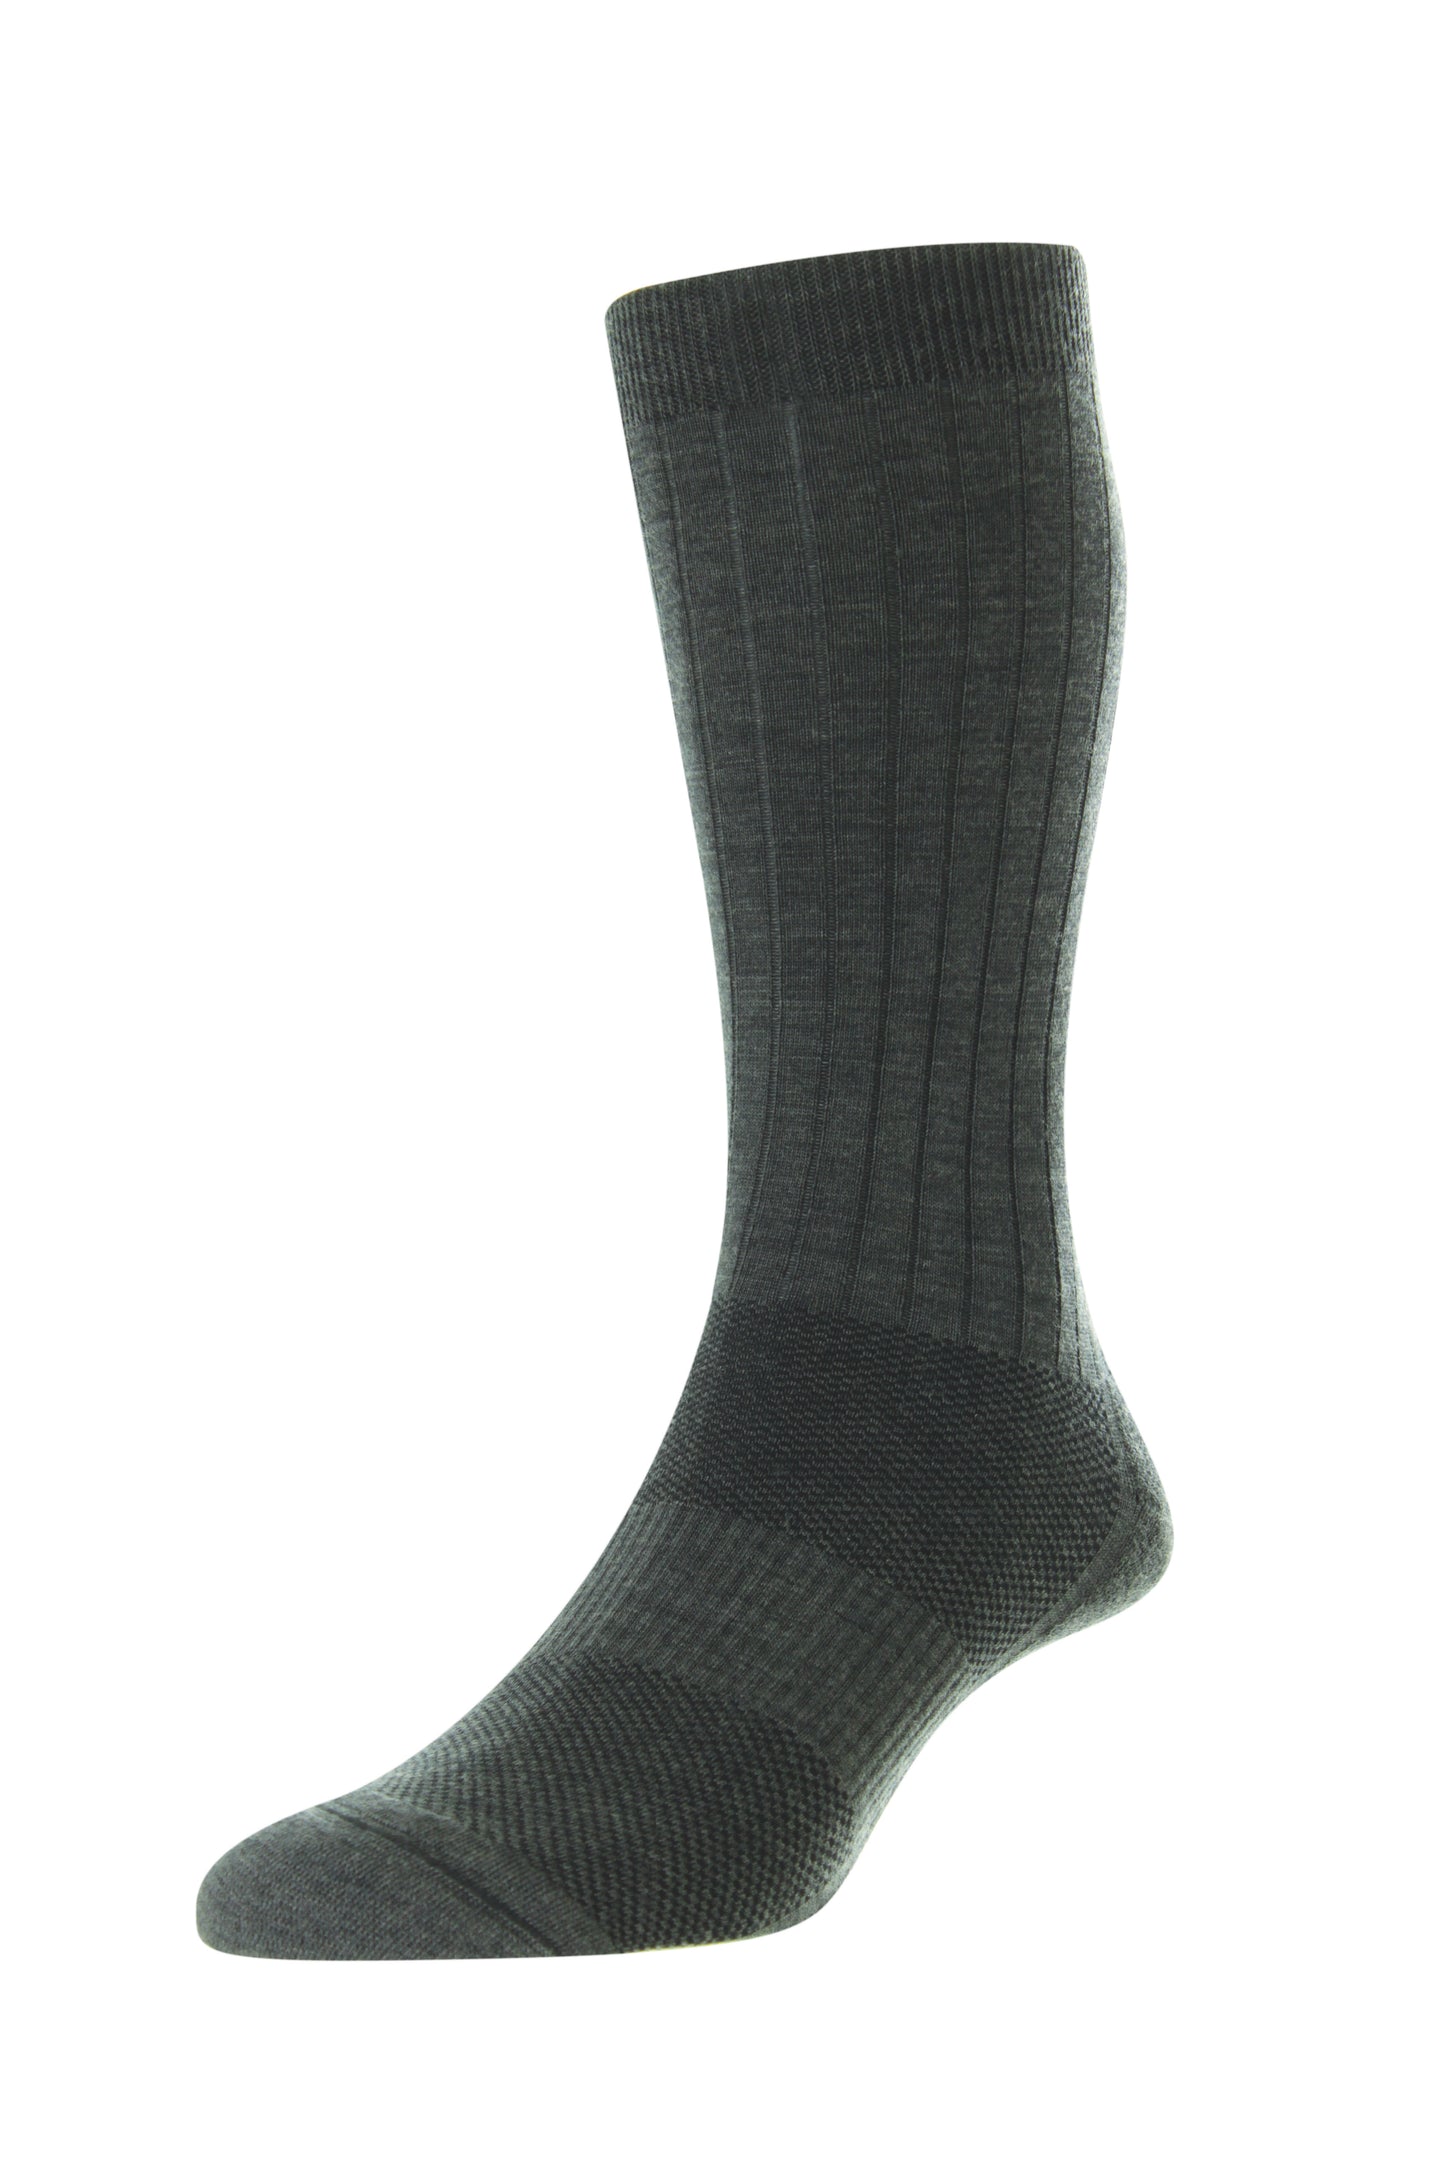 Pantherella Smithfield Hybrid City Socks Dk Grey Mix